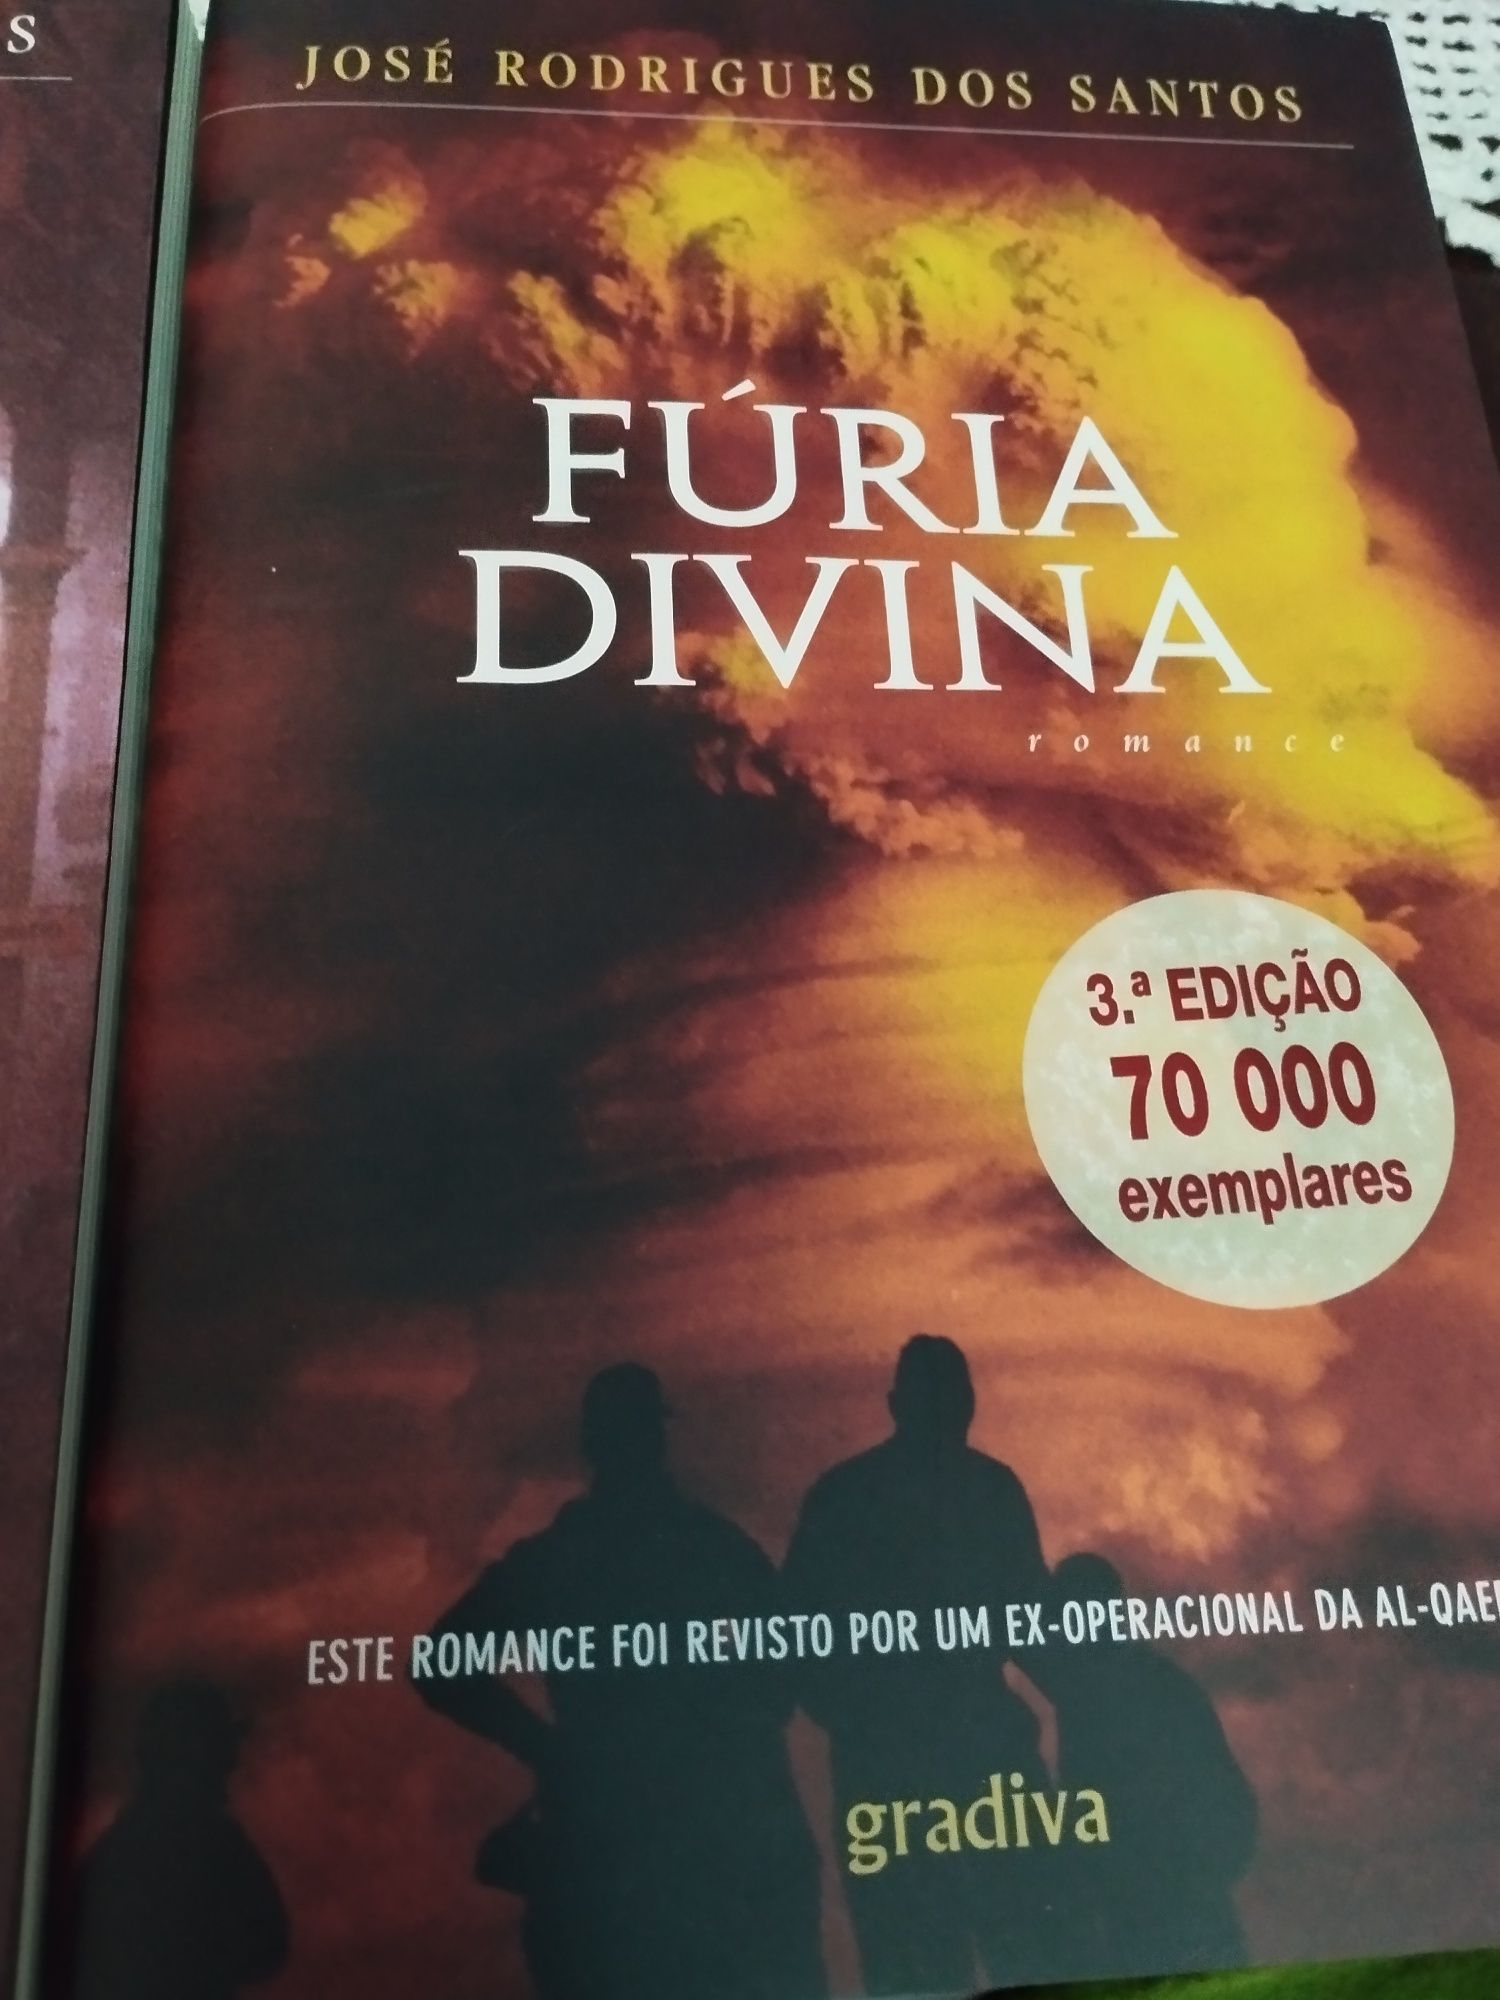 Livros do autor José Rodrigues dos Santos NOVOS